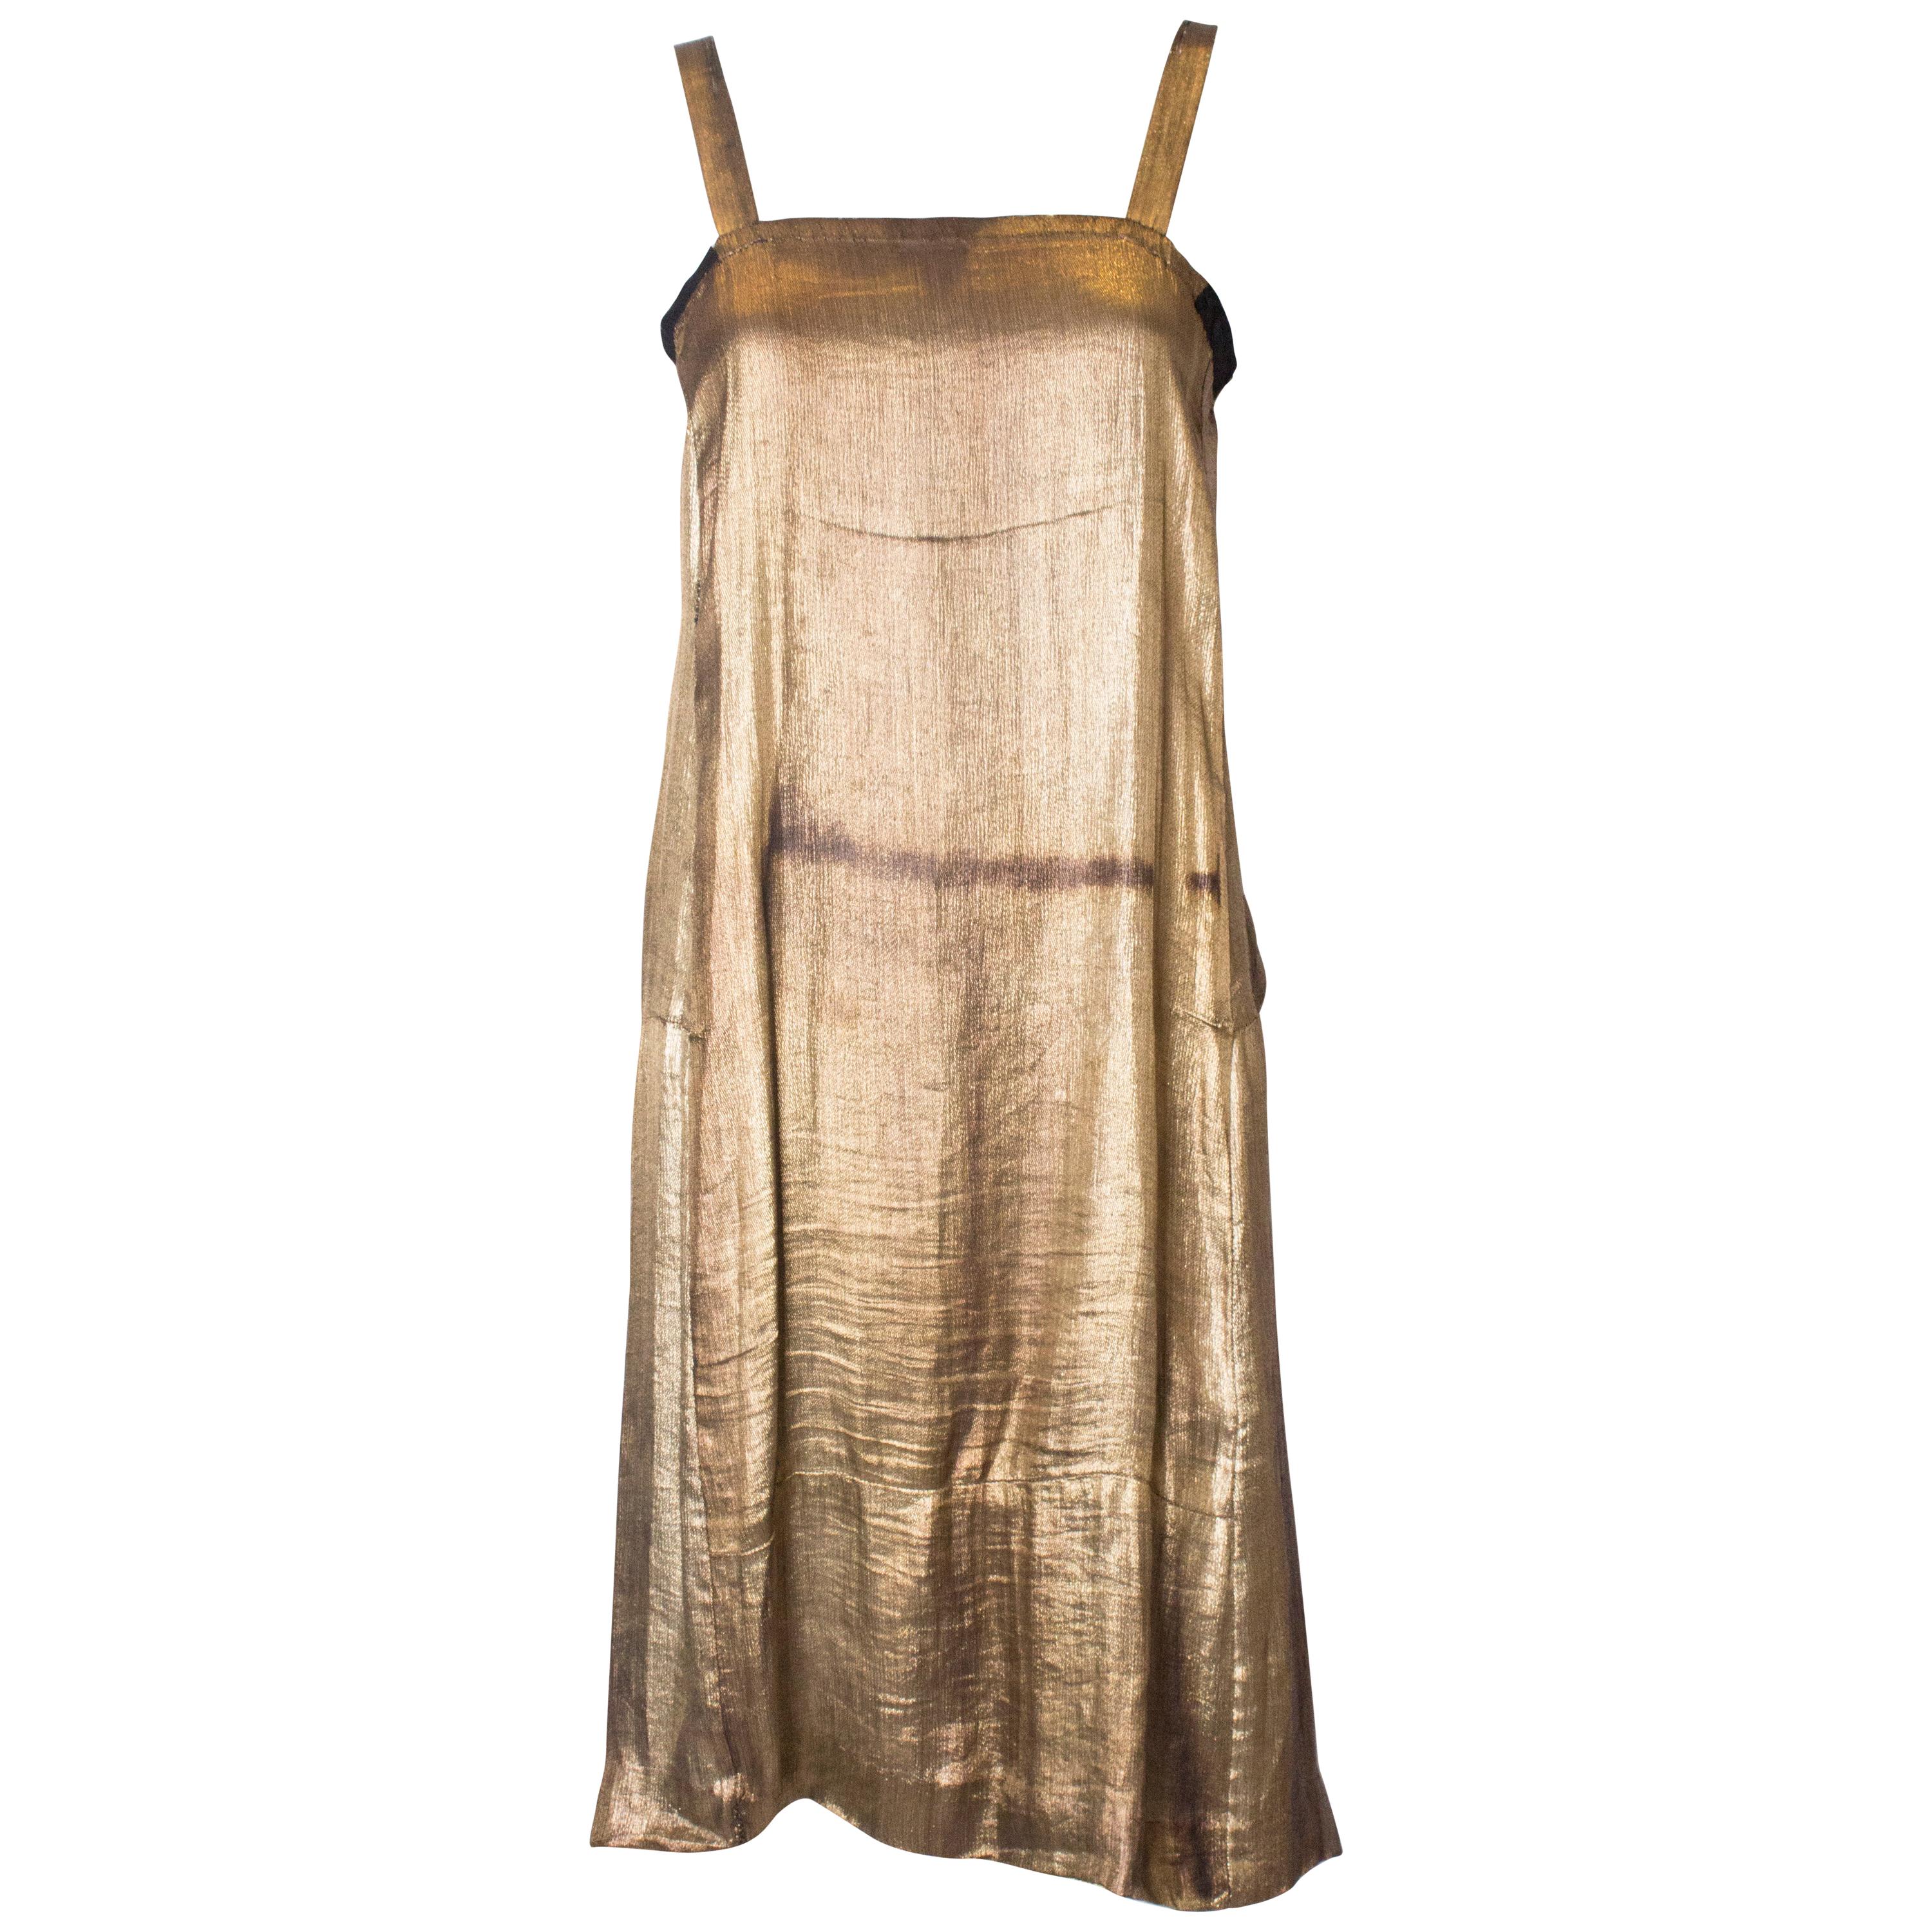 Vintage 1920s Gold Lame Shift Dress